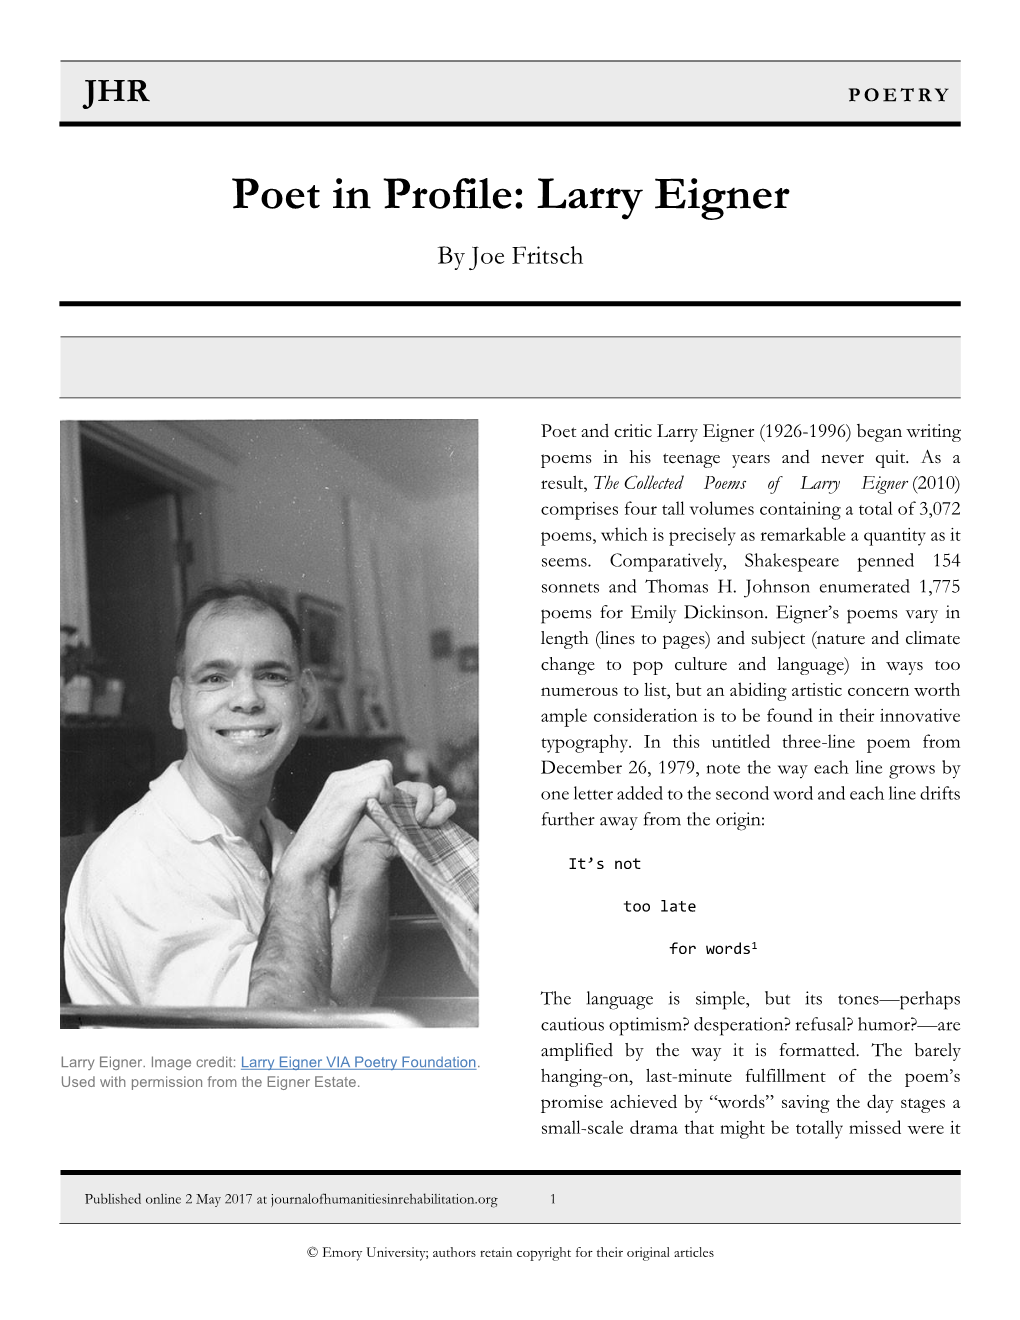 Poet in Profile: Larry Eigner by Joe Fritsch